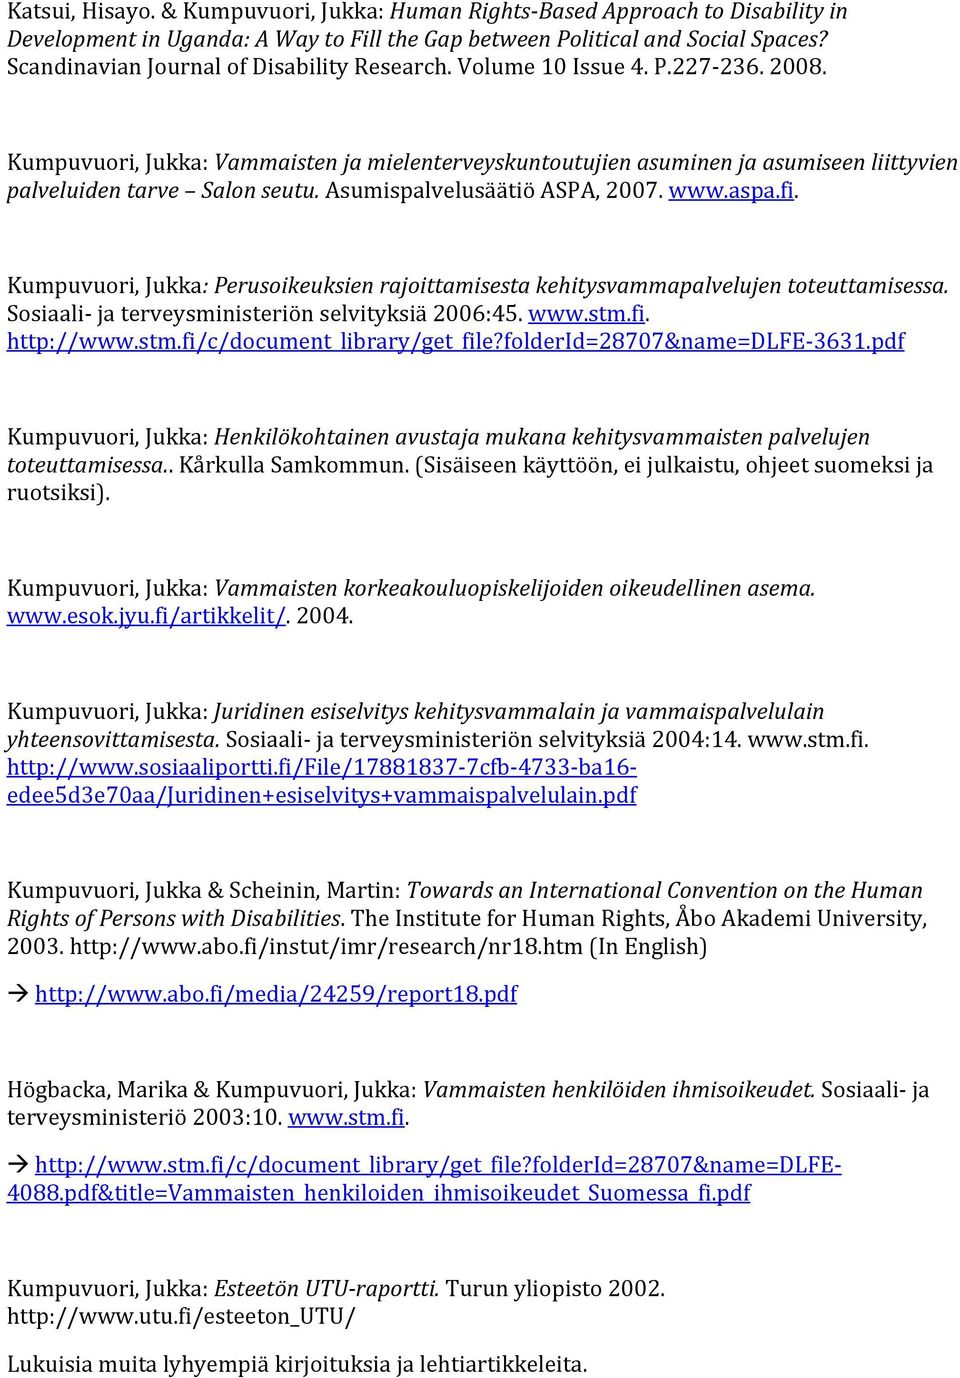 Kumpuvuori, Jukka: Vammaisten ja mielenterveyskuntoutujien asuminen ja asumiseen liittyvien palveluiden tarve Salon seutu. Asumispalvelusäätiö ASPA, 2007. www.aspa.fi.